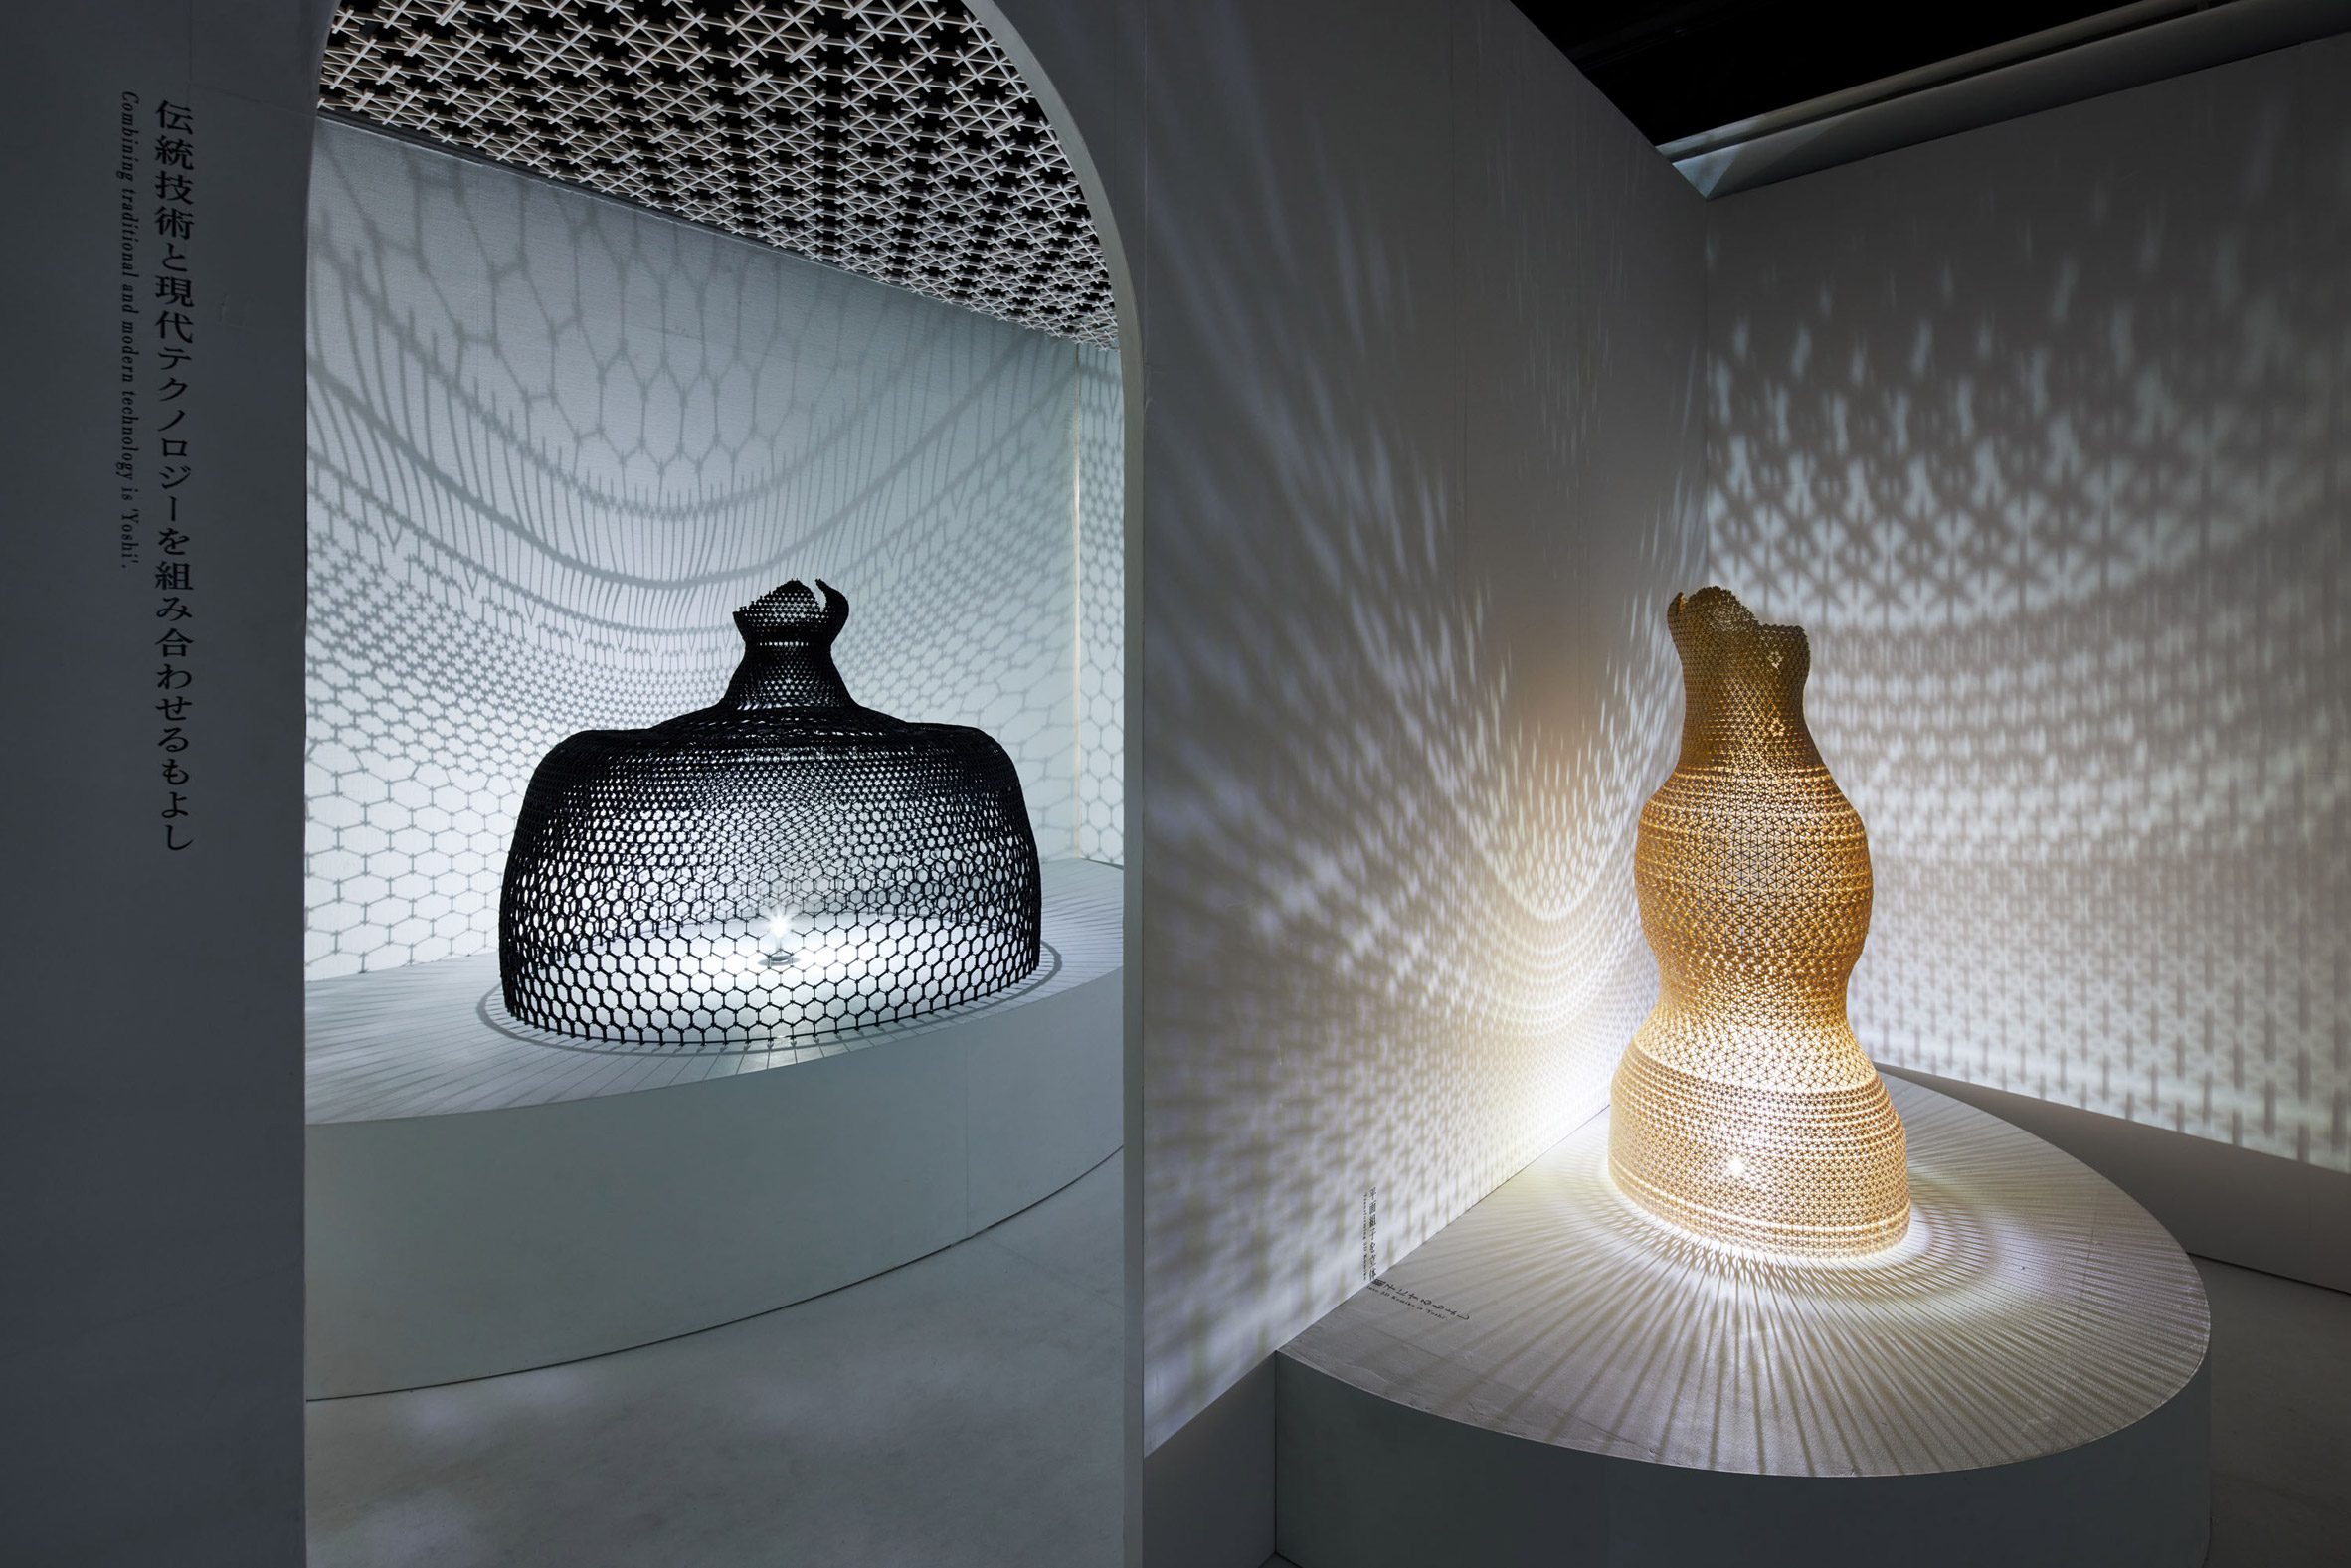 Woven lampshades at Designart Tokyo